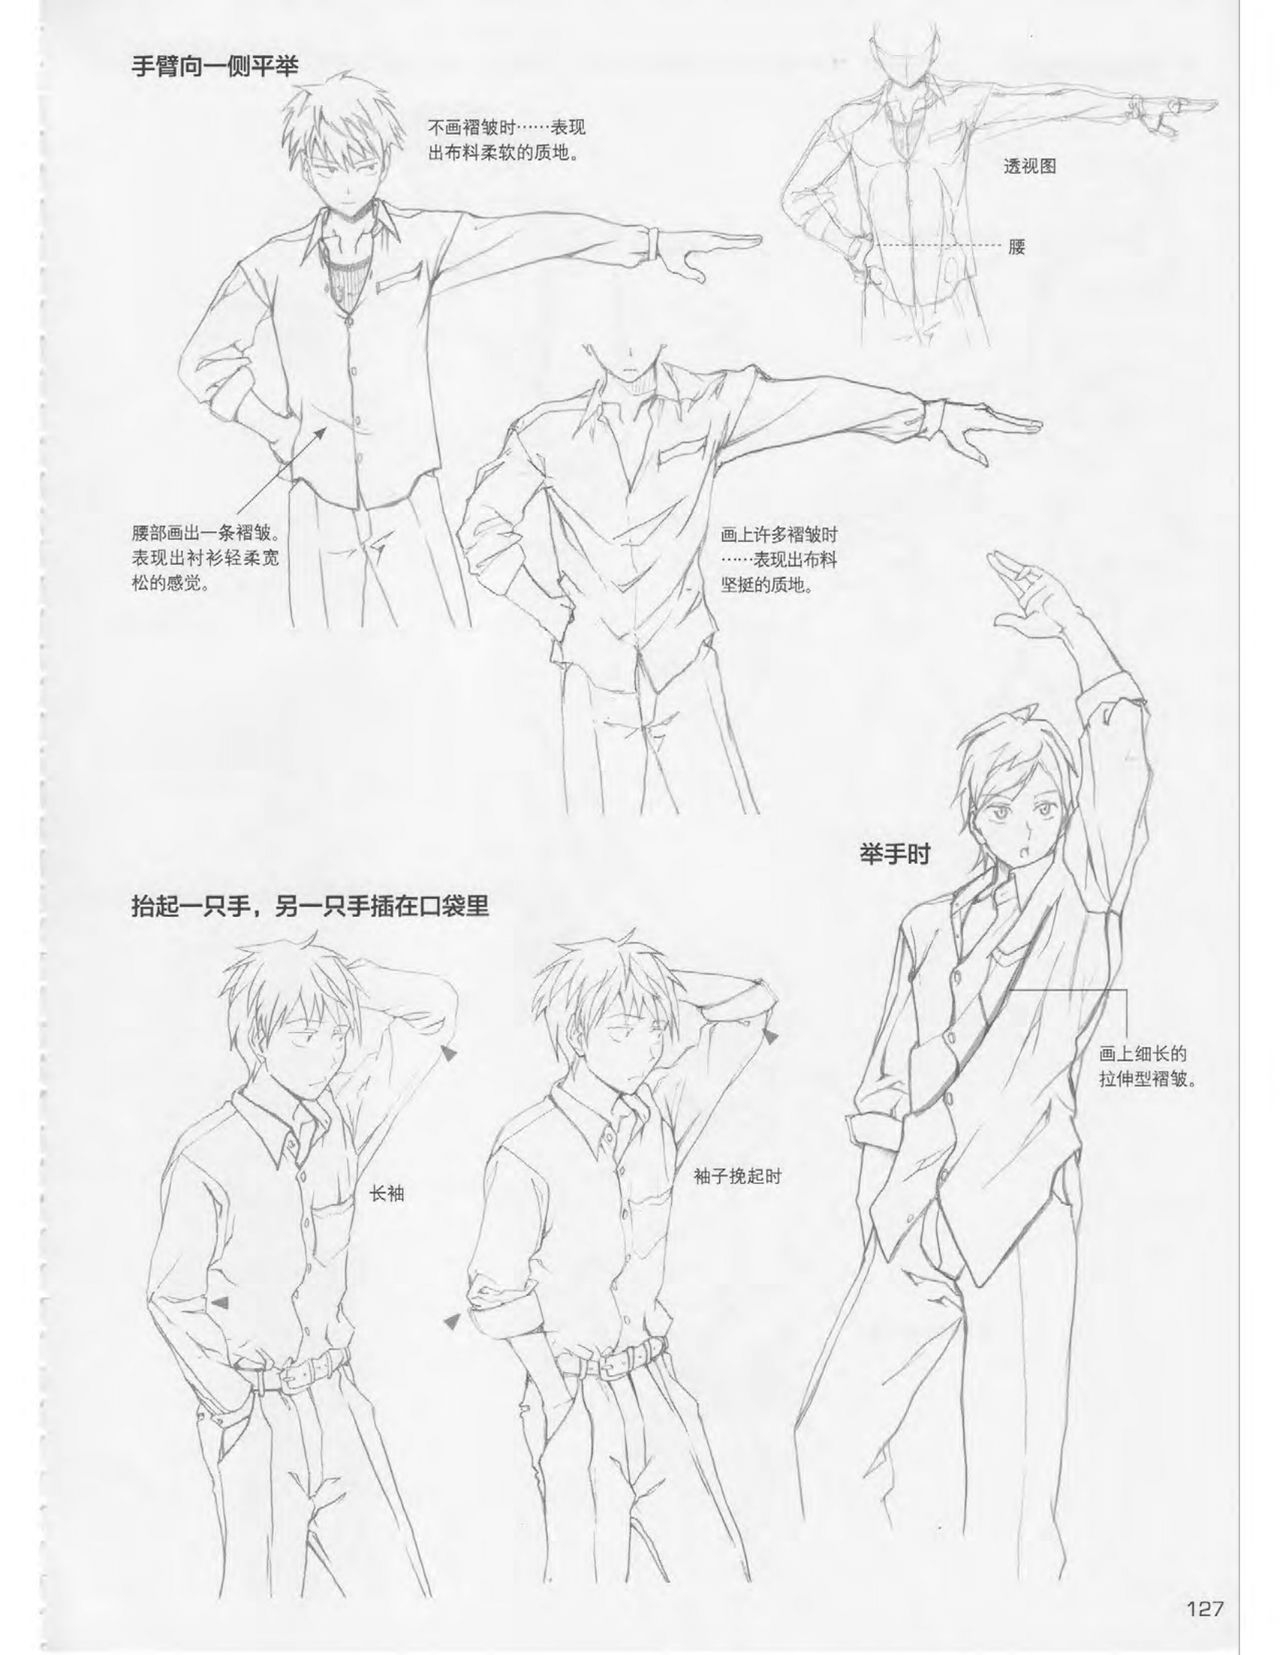 Japanese Manga Master Lecture 3: Lin Akira and Kakumaru Maru Talk About Glamorous Character Modeling 126